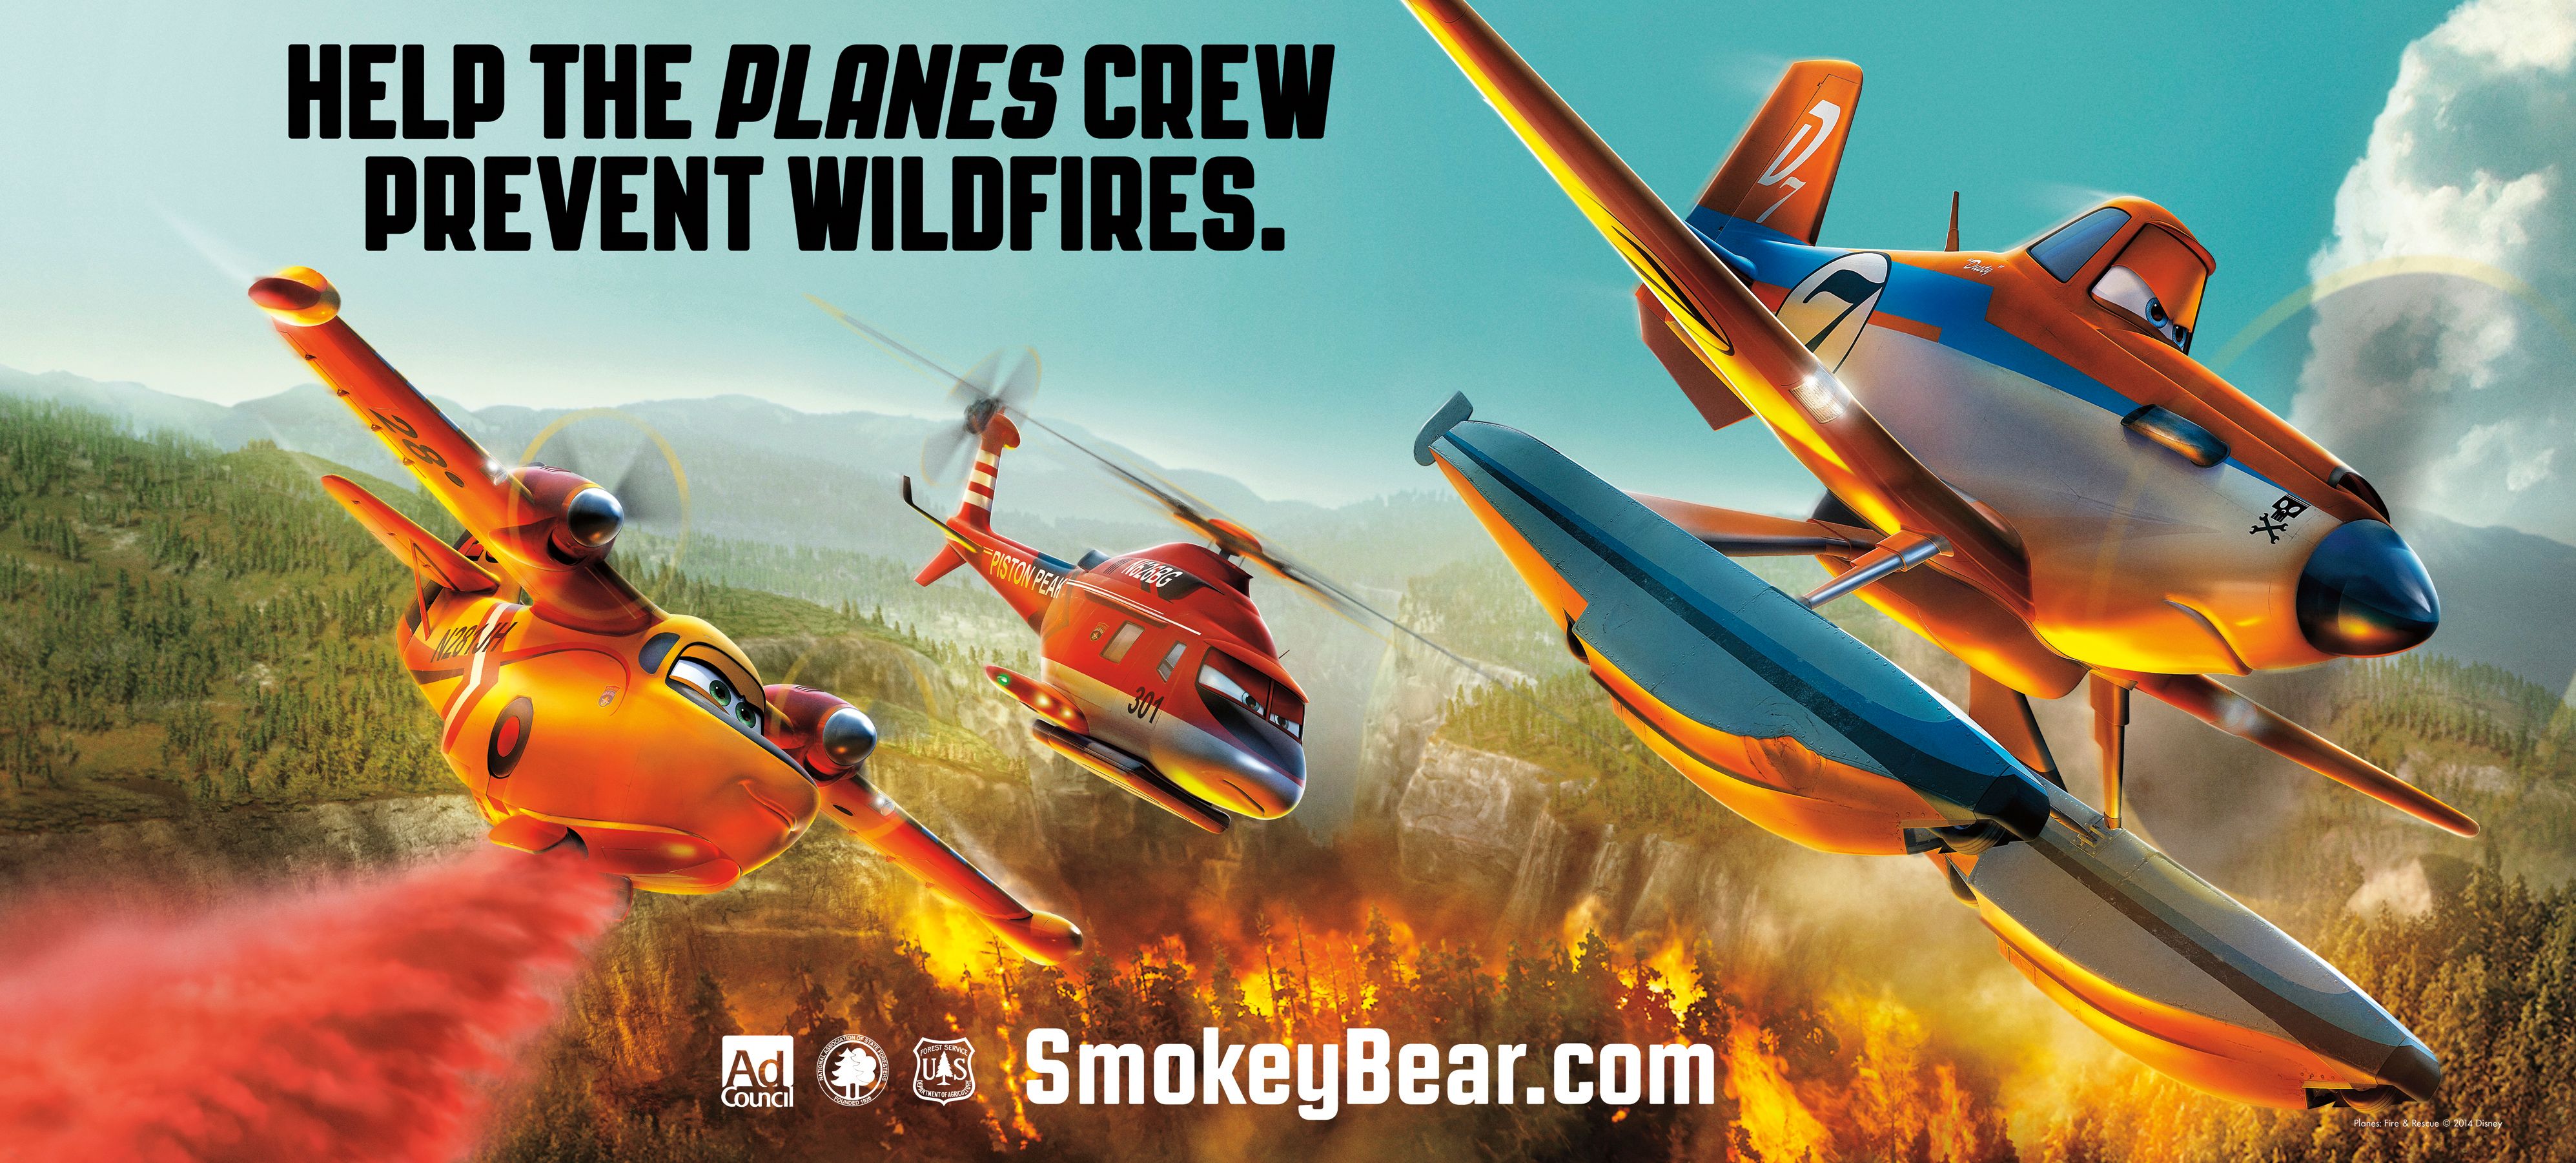 Planes Fire and Rescue Smokey Bear PSA